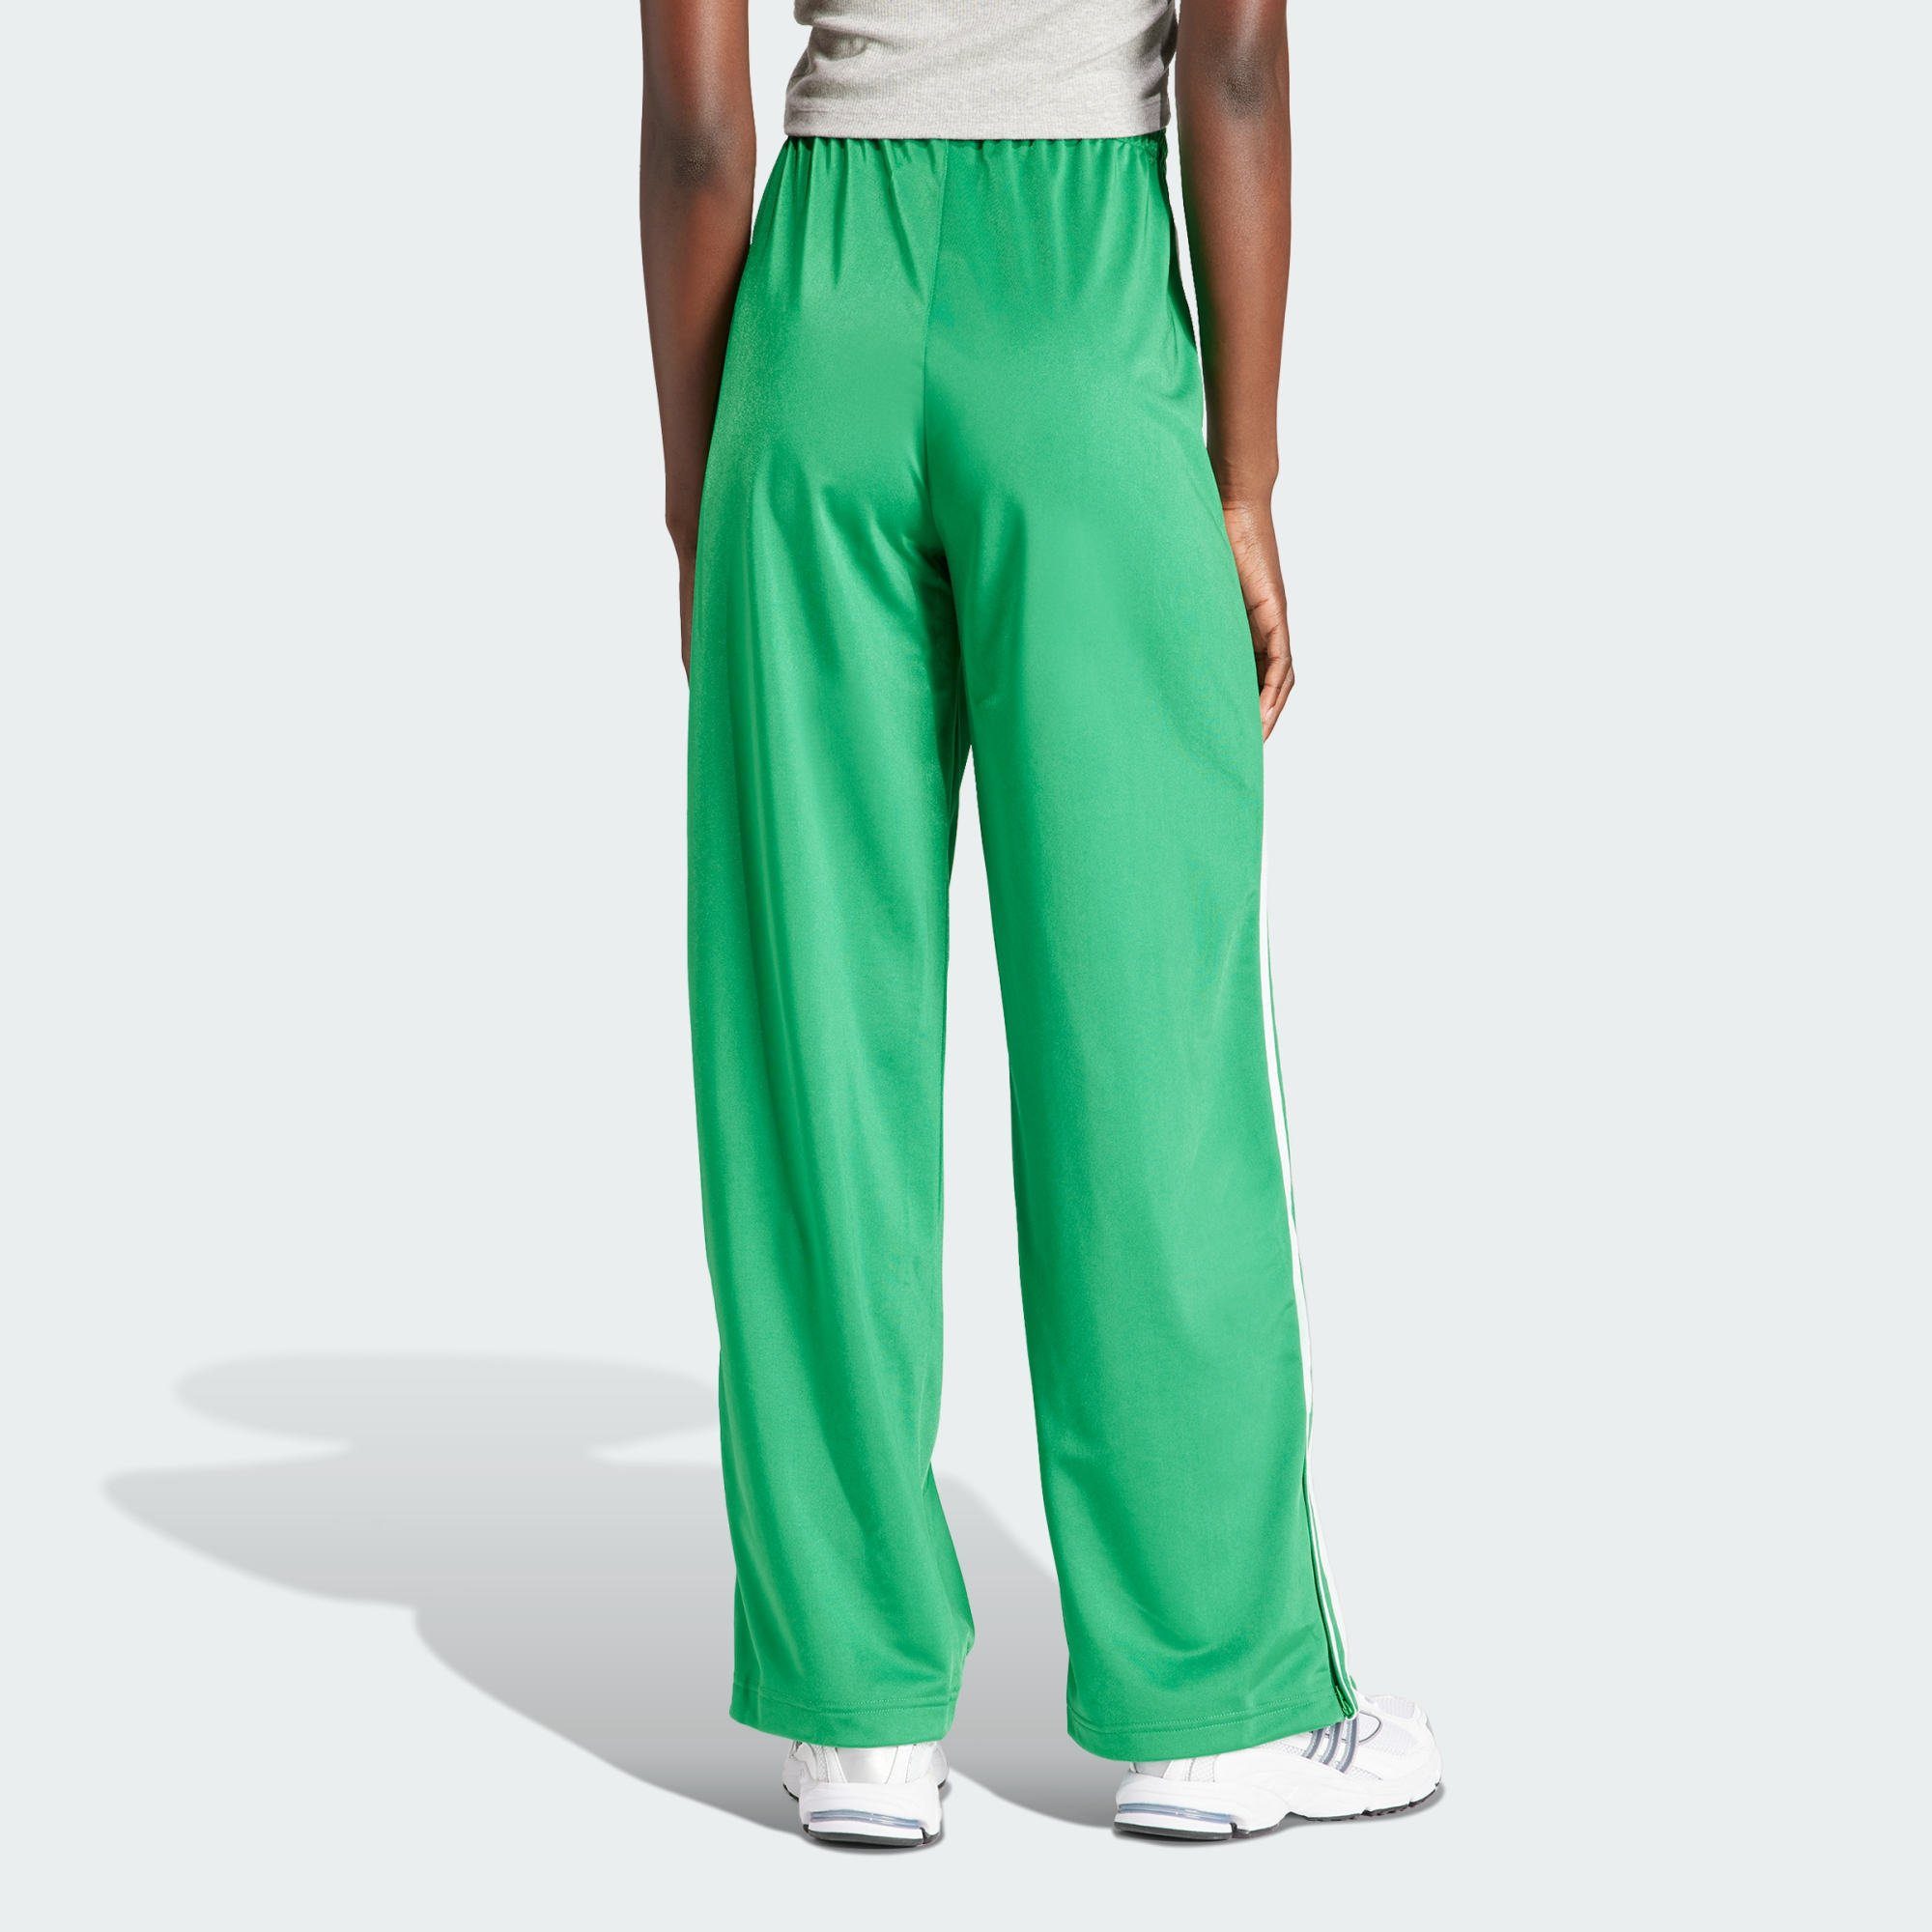 FIREBIRD Green Jogginghose TRAININGSHOSE adidas Originals LOOSE